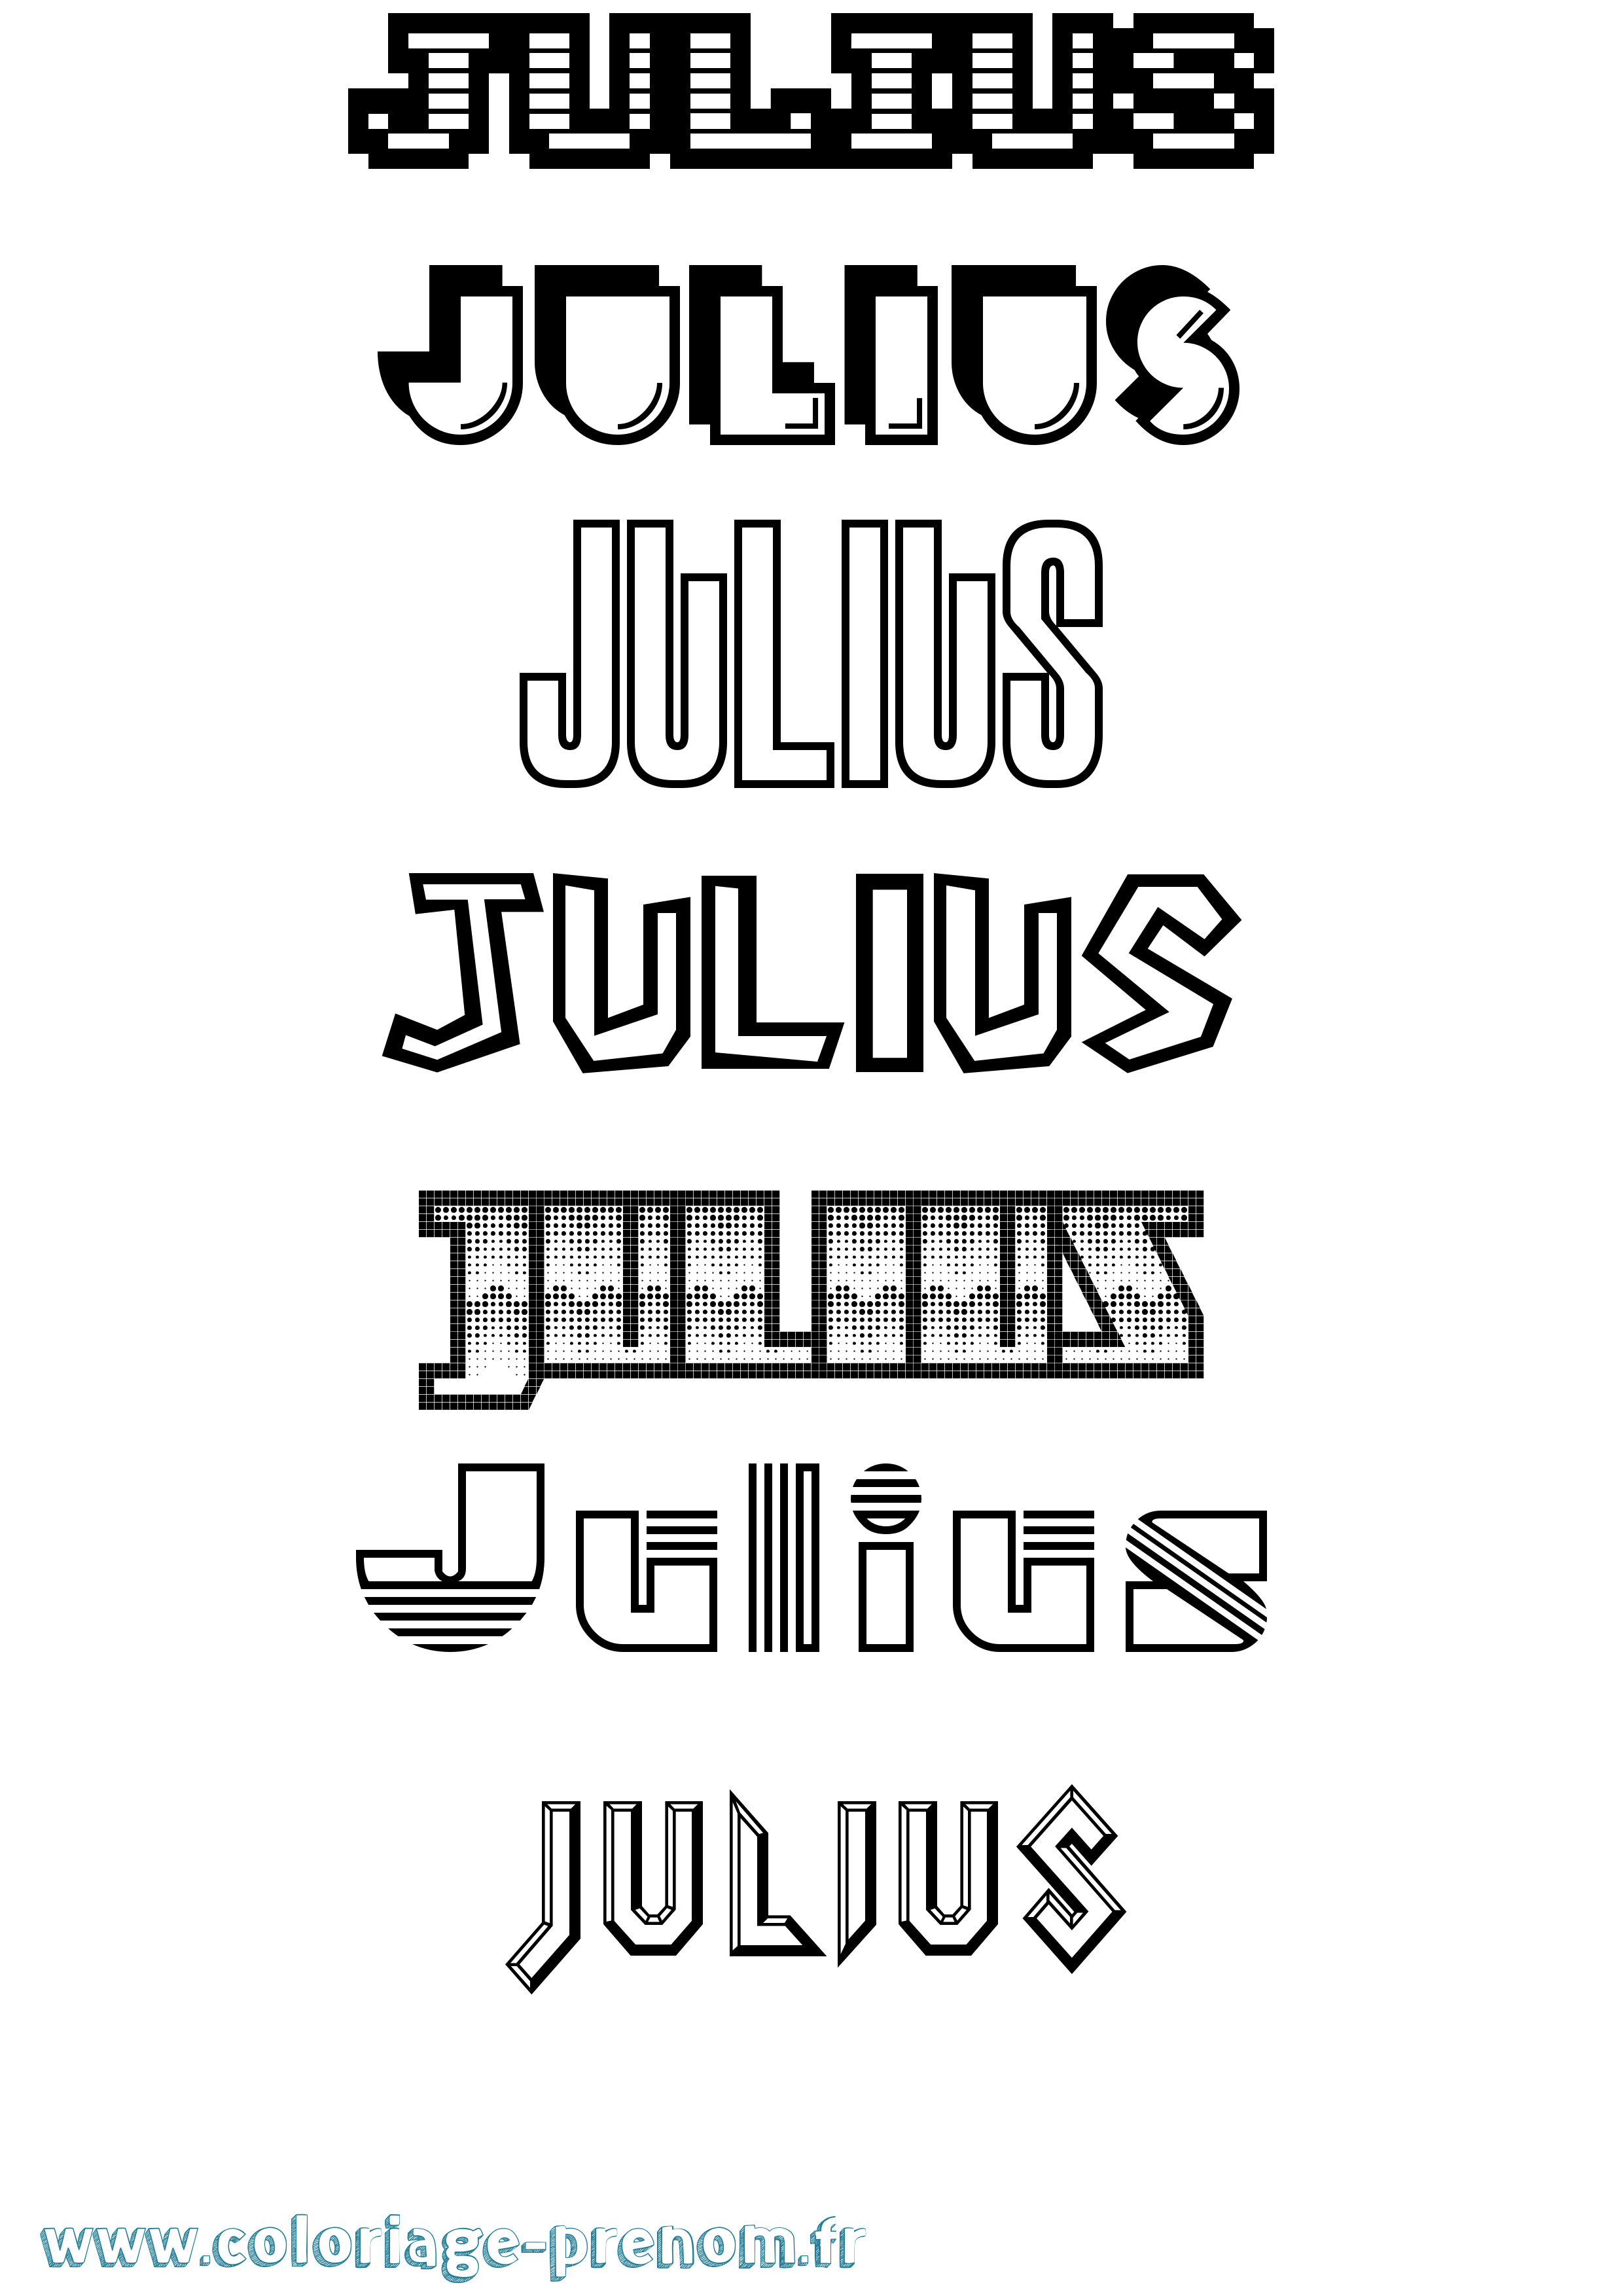 Coloriage prénom Julius Jeux Vidéos